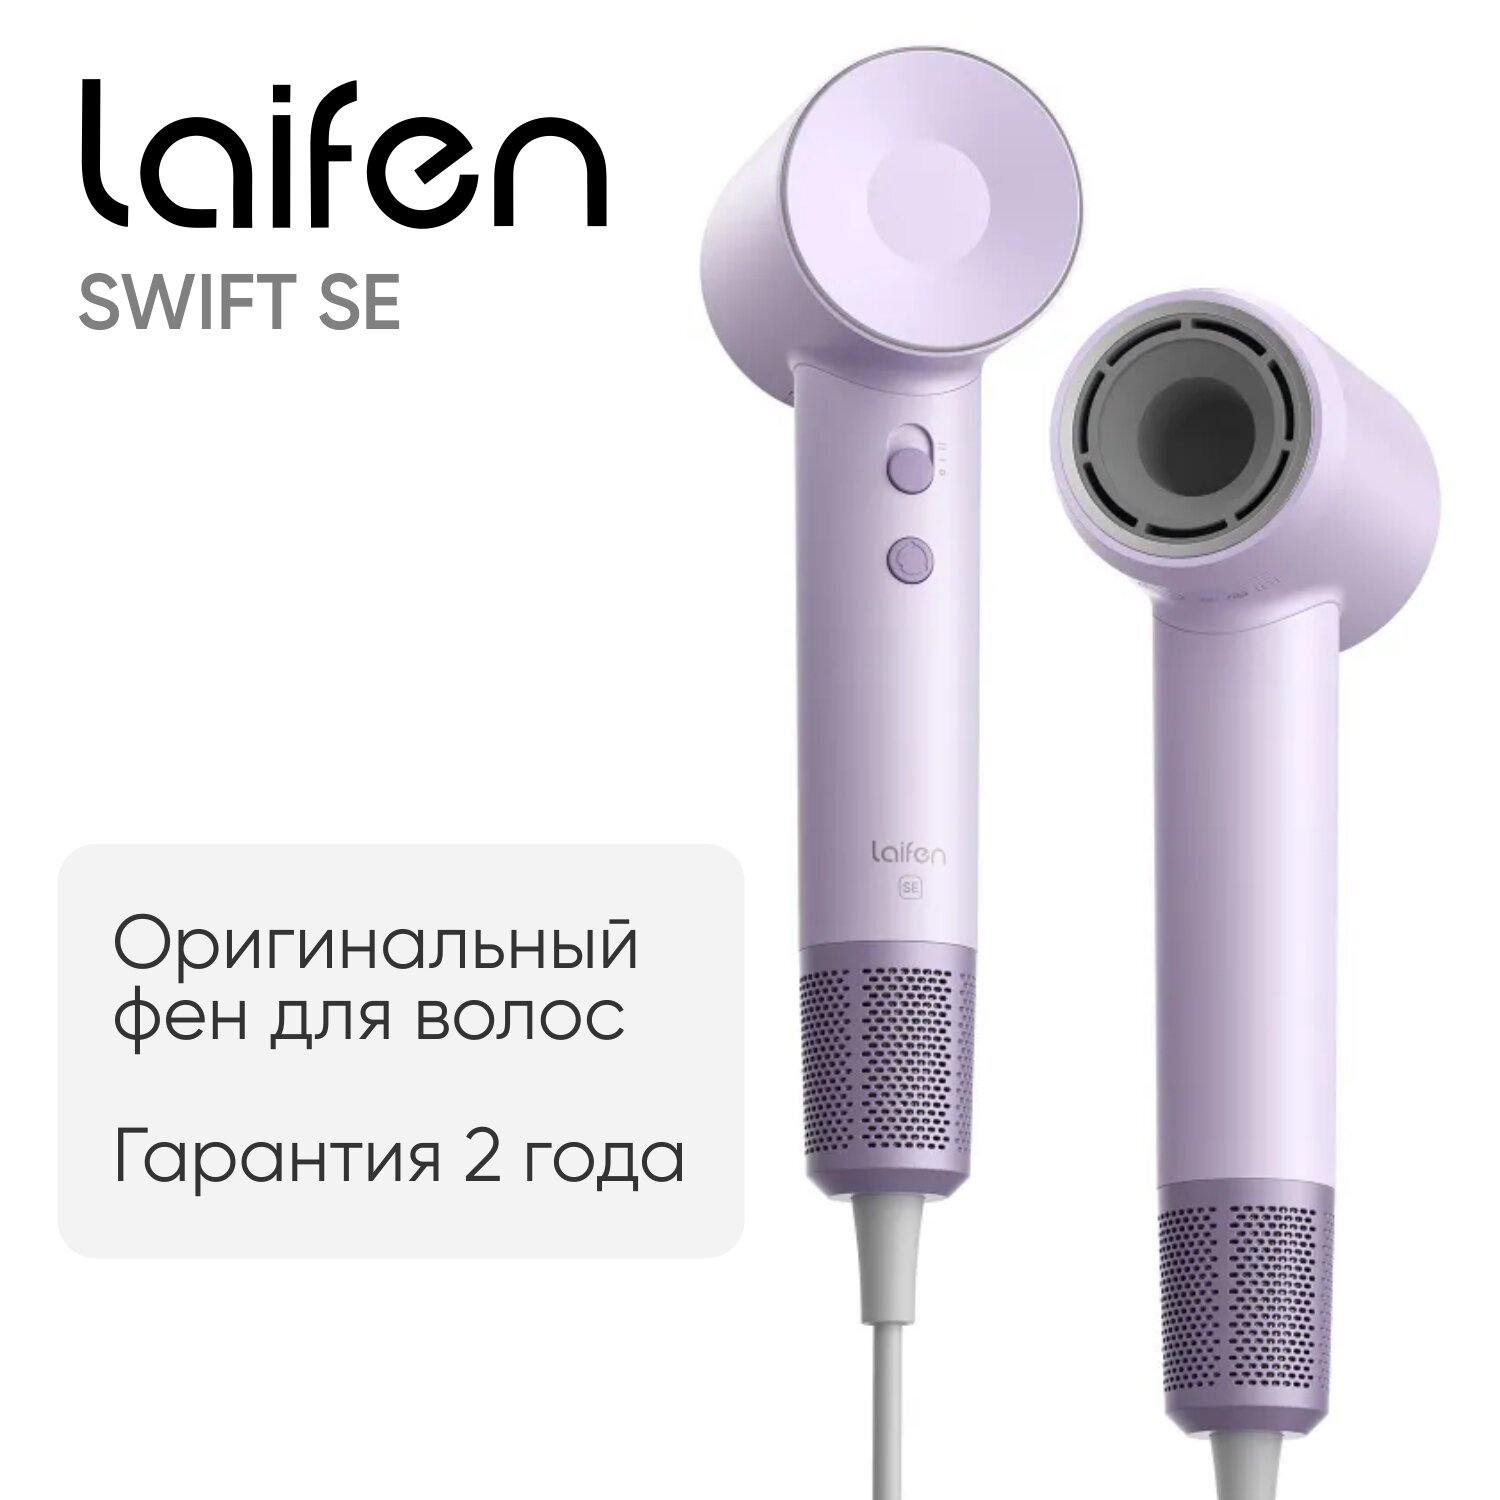 Фен для волос 1500 Вт Laifen Swift SE матово-фиолетовый